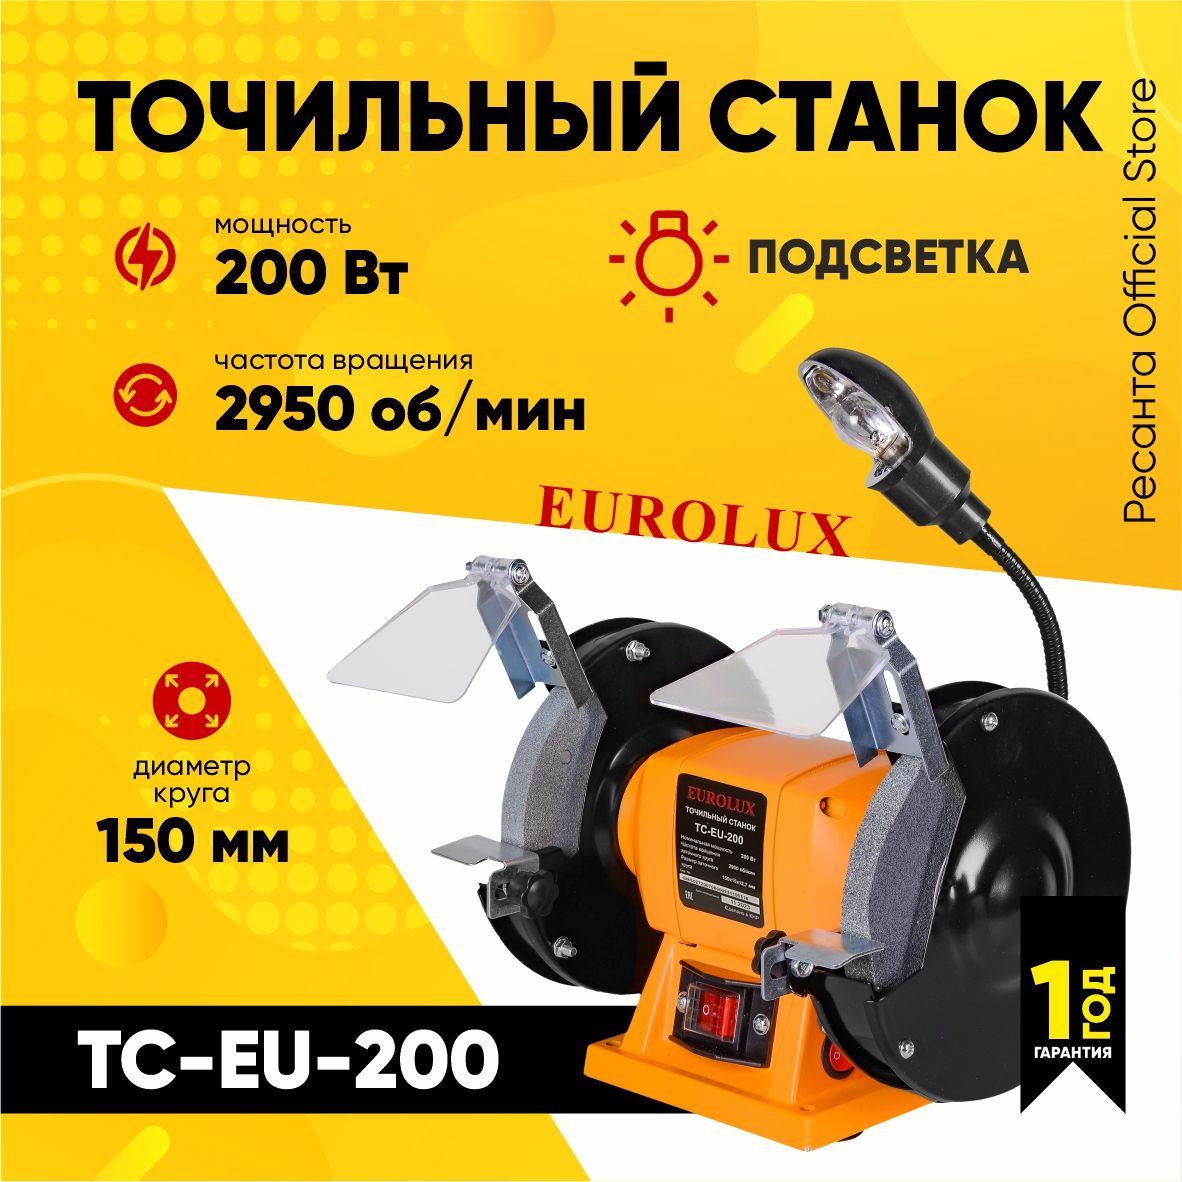 ТочильныйстанокТС-EU-200Eurolux(200Вт,круг150мм)